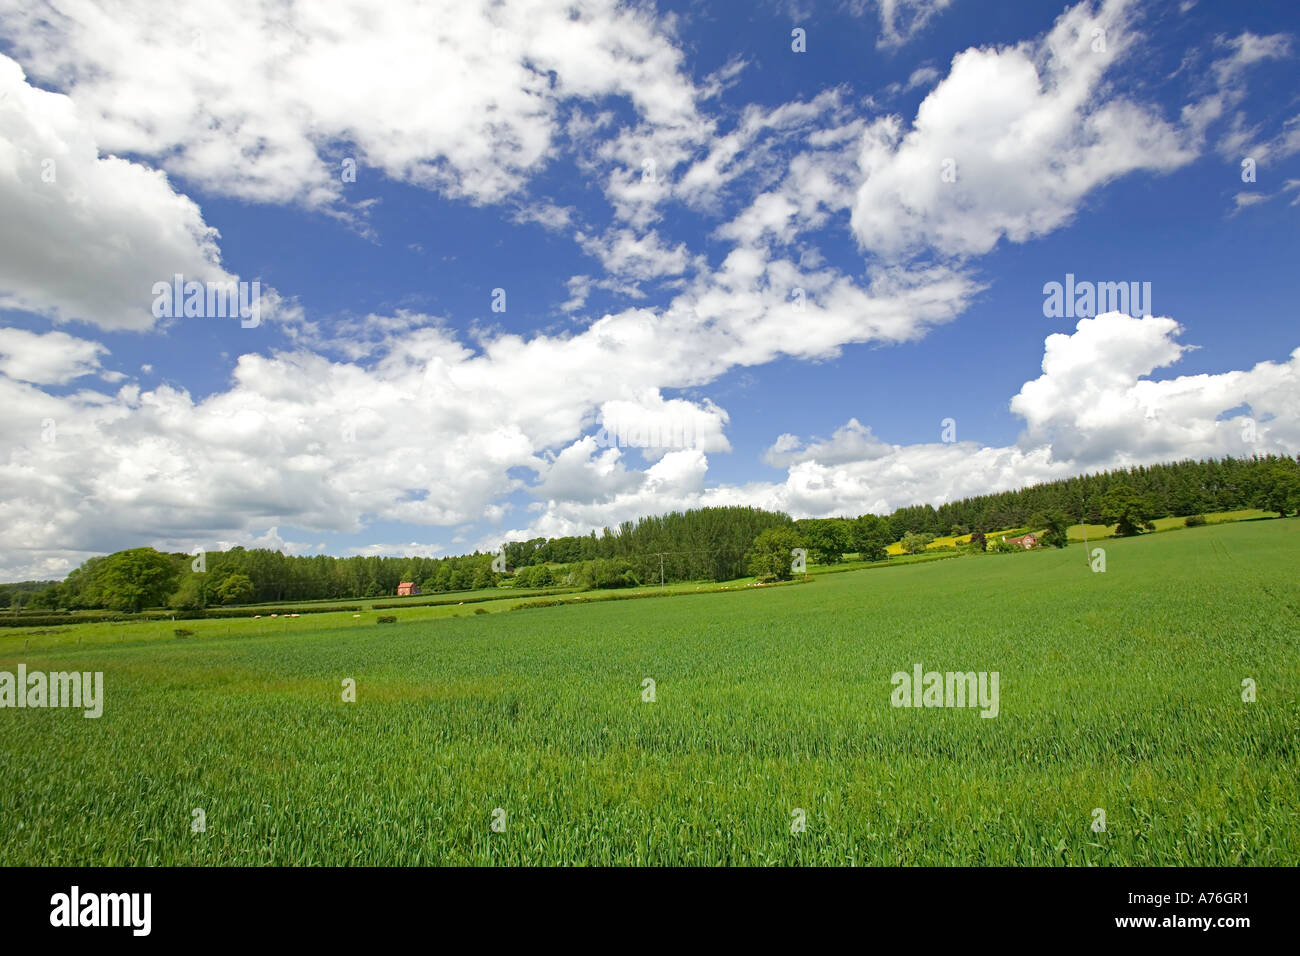 Campiña inglesa típica escena de campos verdes y cielo azul. Foto de stock